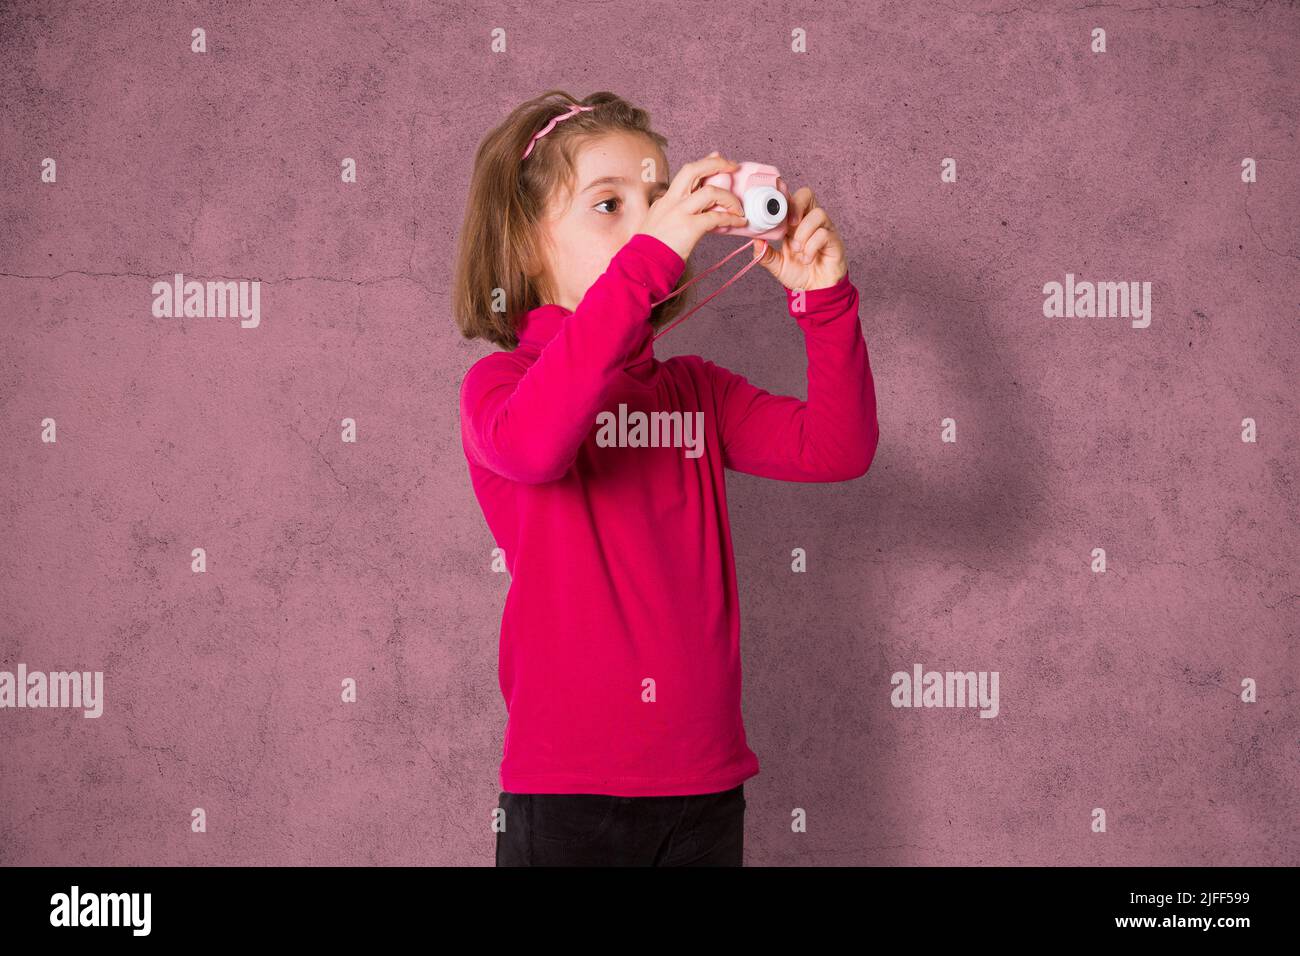 Little Girl está tomando una fotografía con la cámara de fotos de juguete sobre fondo rosa Foto de stock